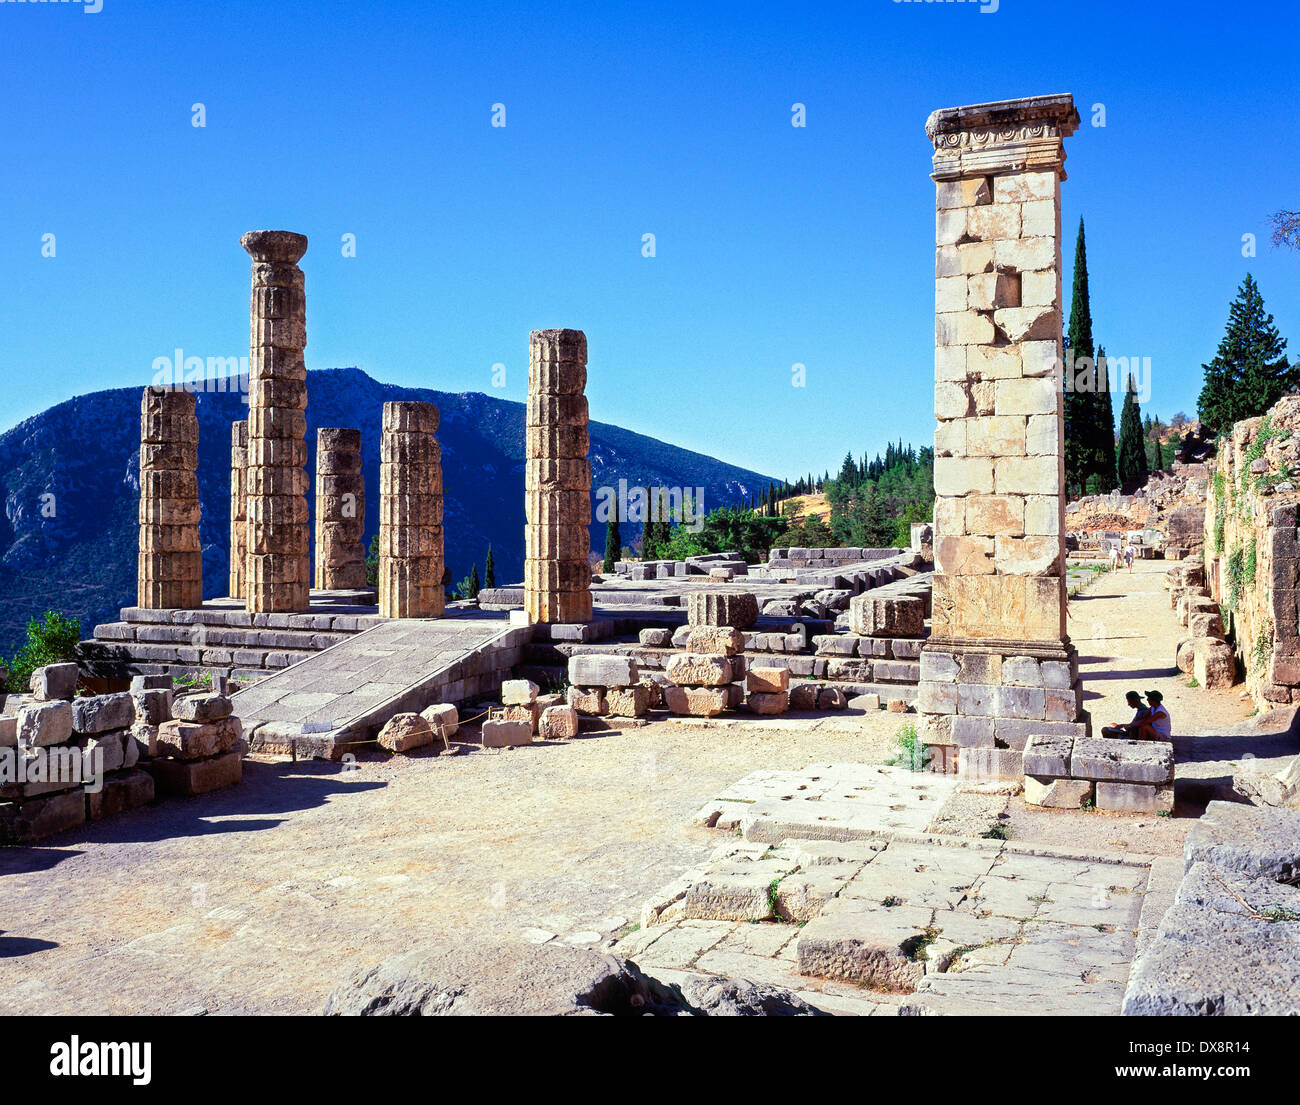 the Temple of Apollo ruins at ancient Delphi Sterea Ellada Greece Stock Photo